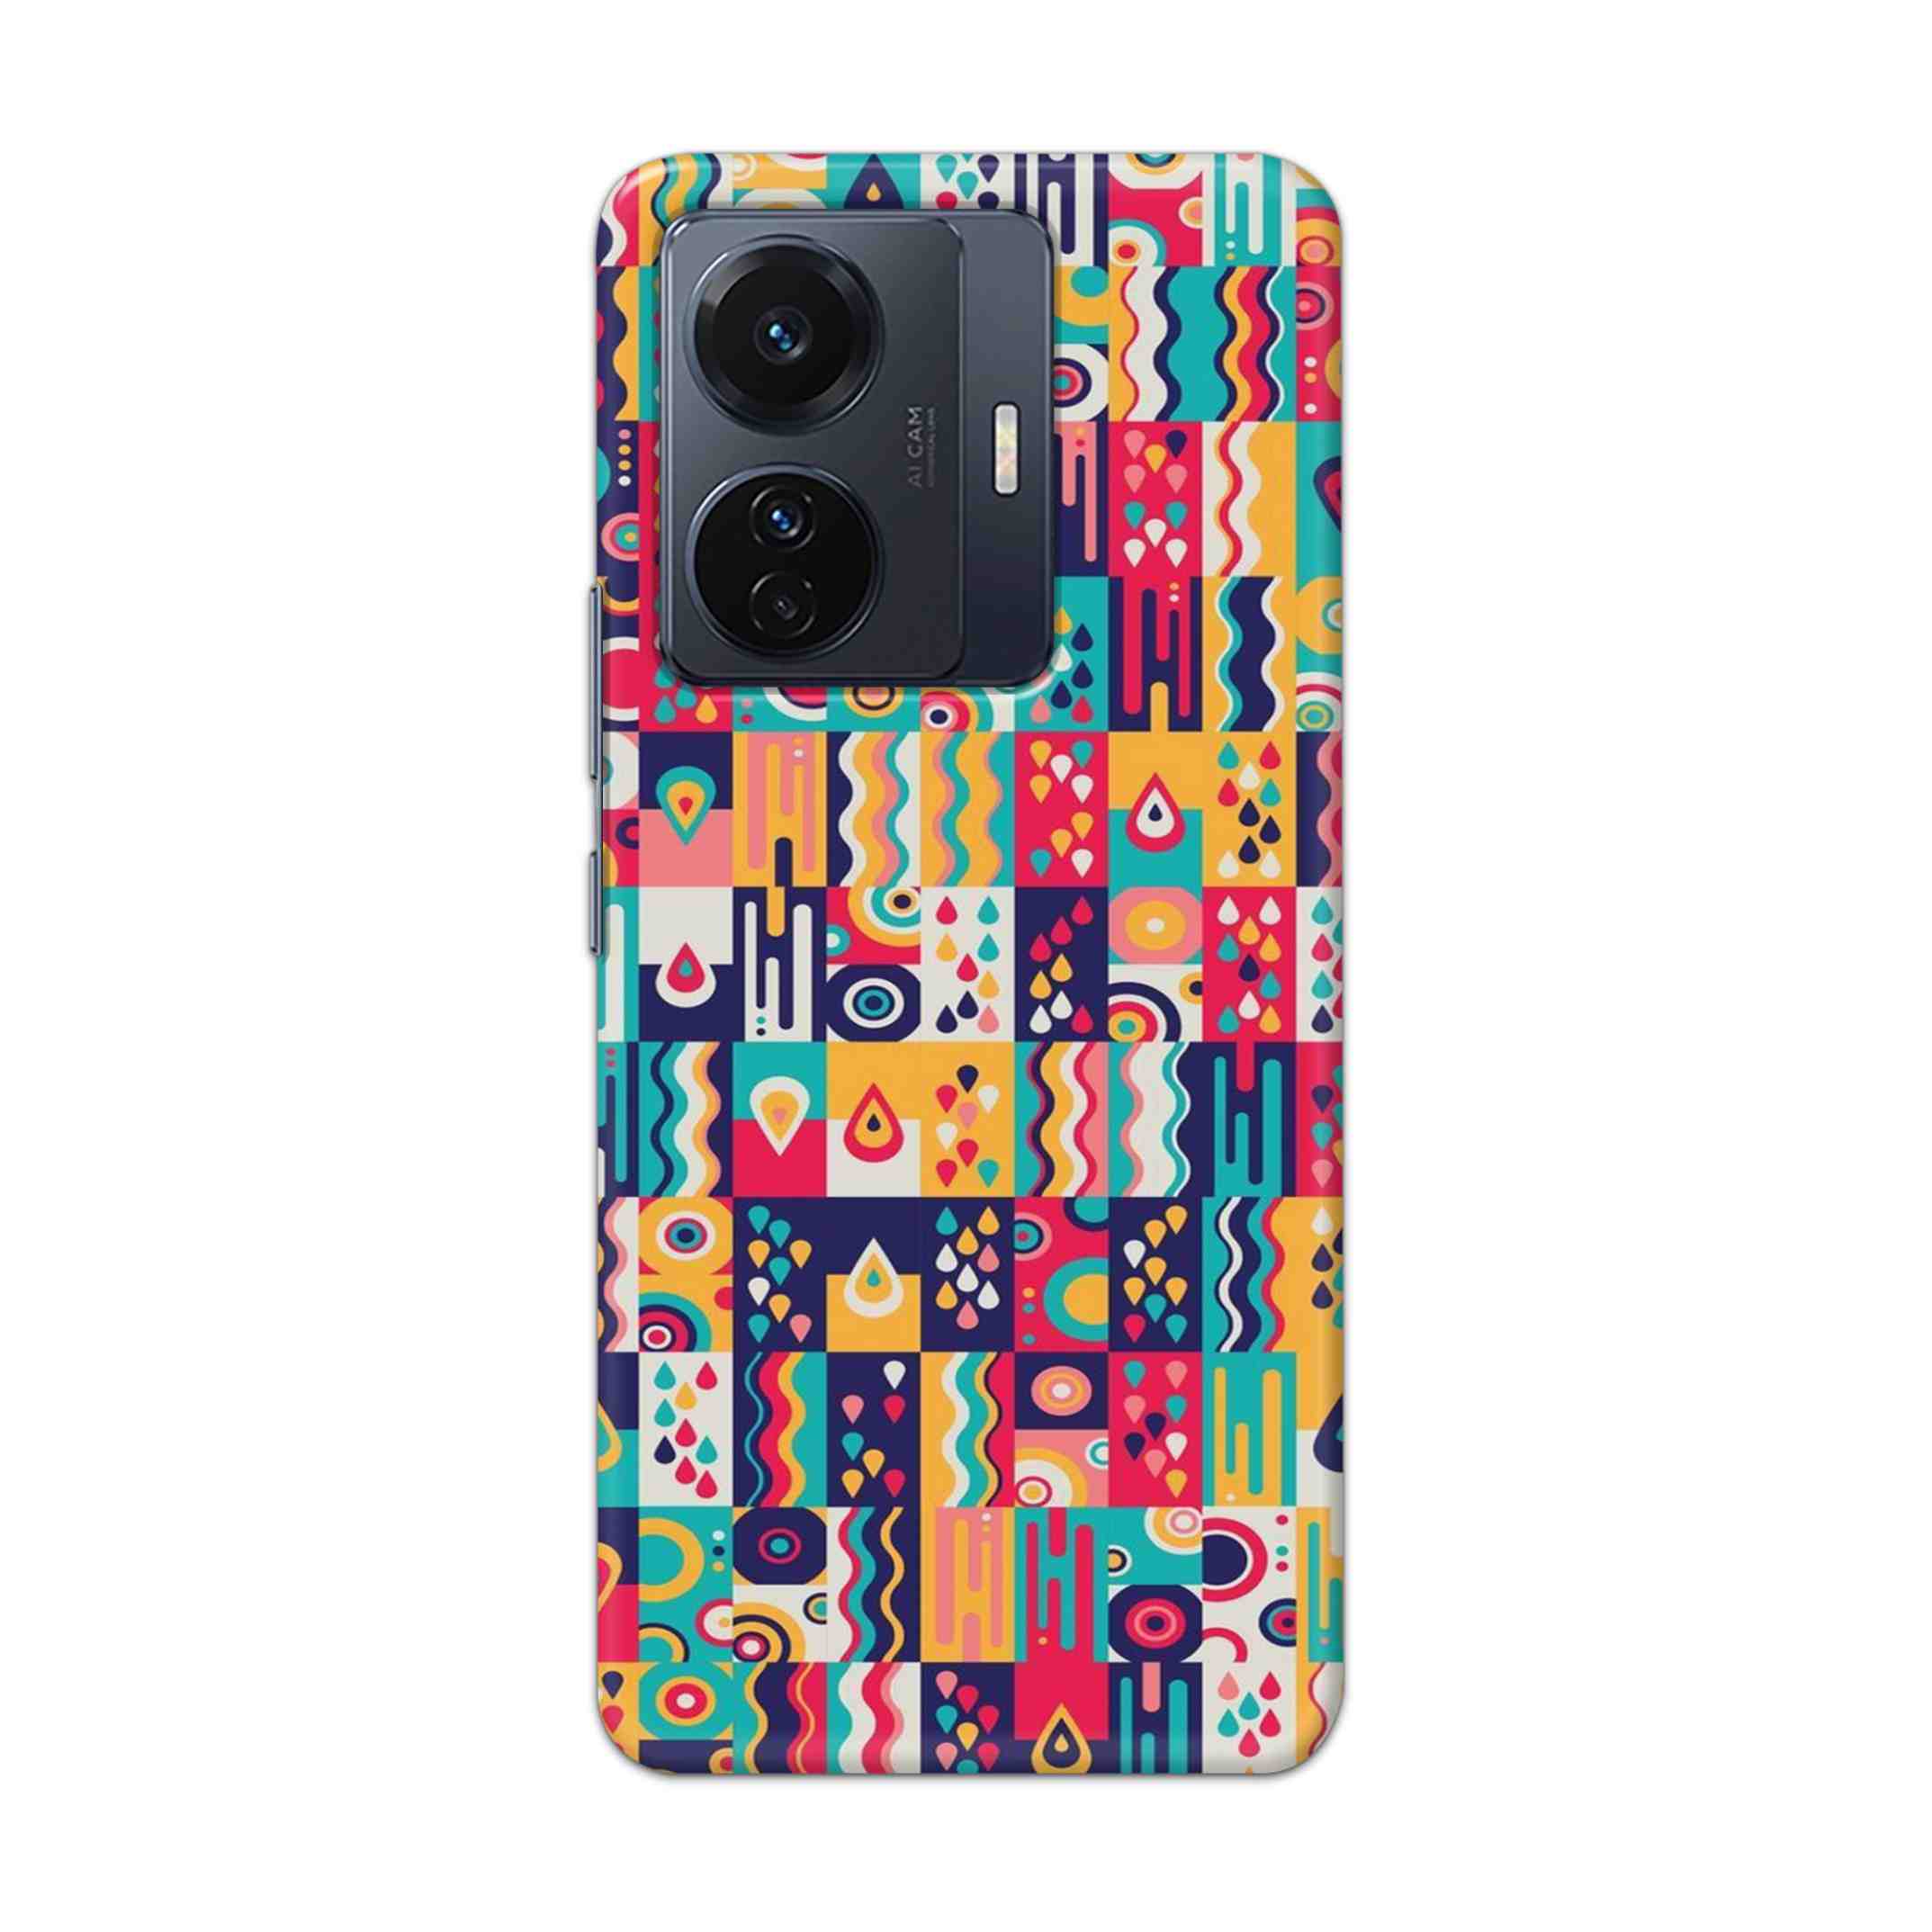 Buy Art Hard Back Mobile Phone Case Cover For Vivo T1 Pro 5G Online